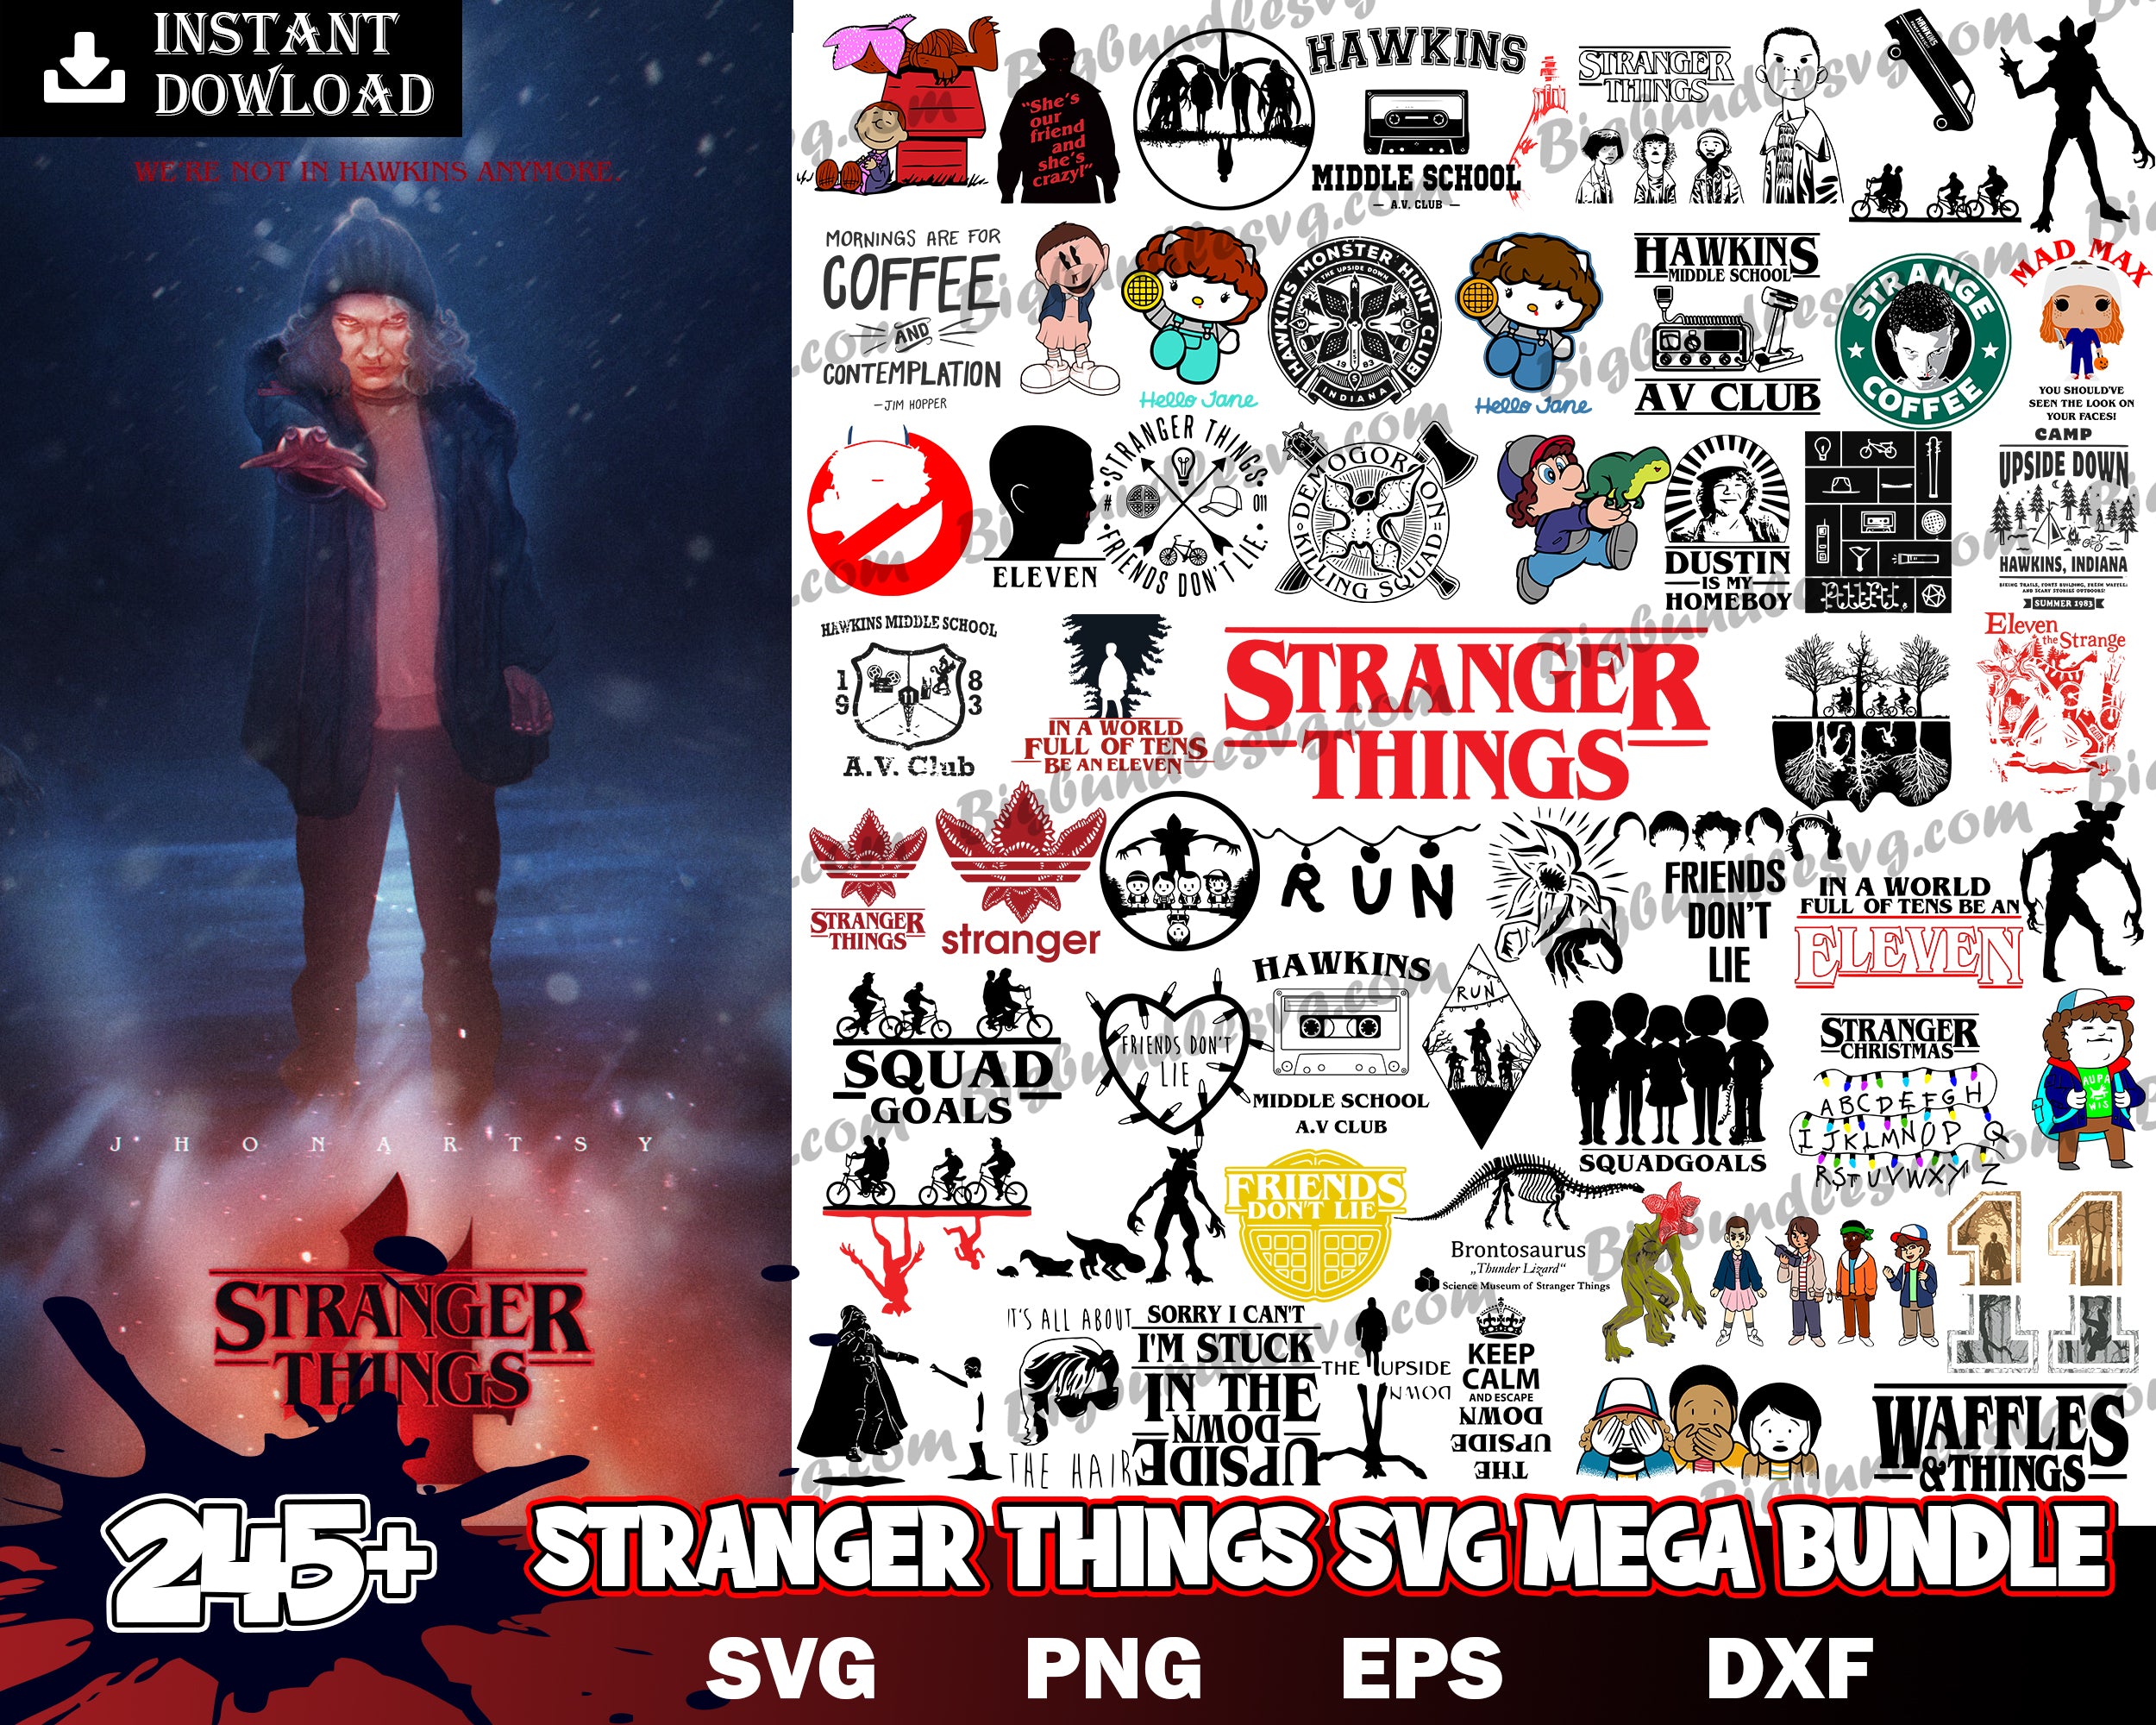 245 Stranger Things SVG Bundle, Stranger Things PNG Bundle, Stranger Things Bundle, Stranger Things Cut Files, Stranger Things Prints